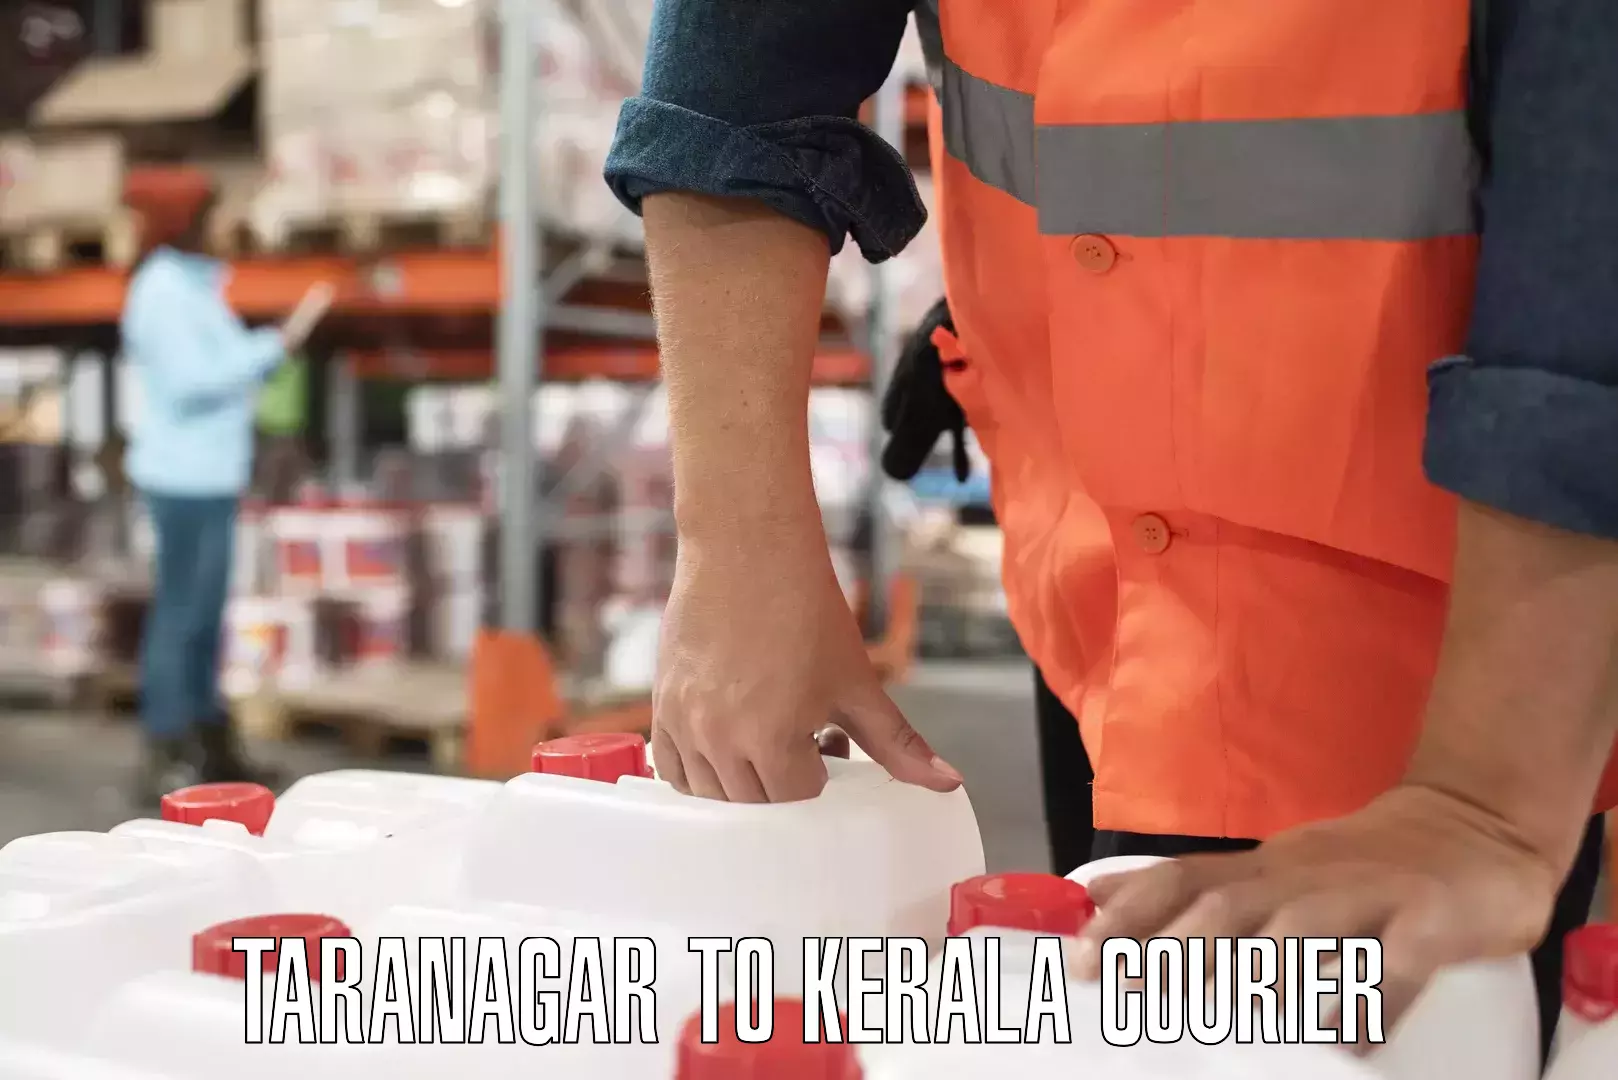 On-demand delivery Taranagar to Kattappana